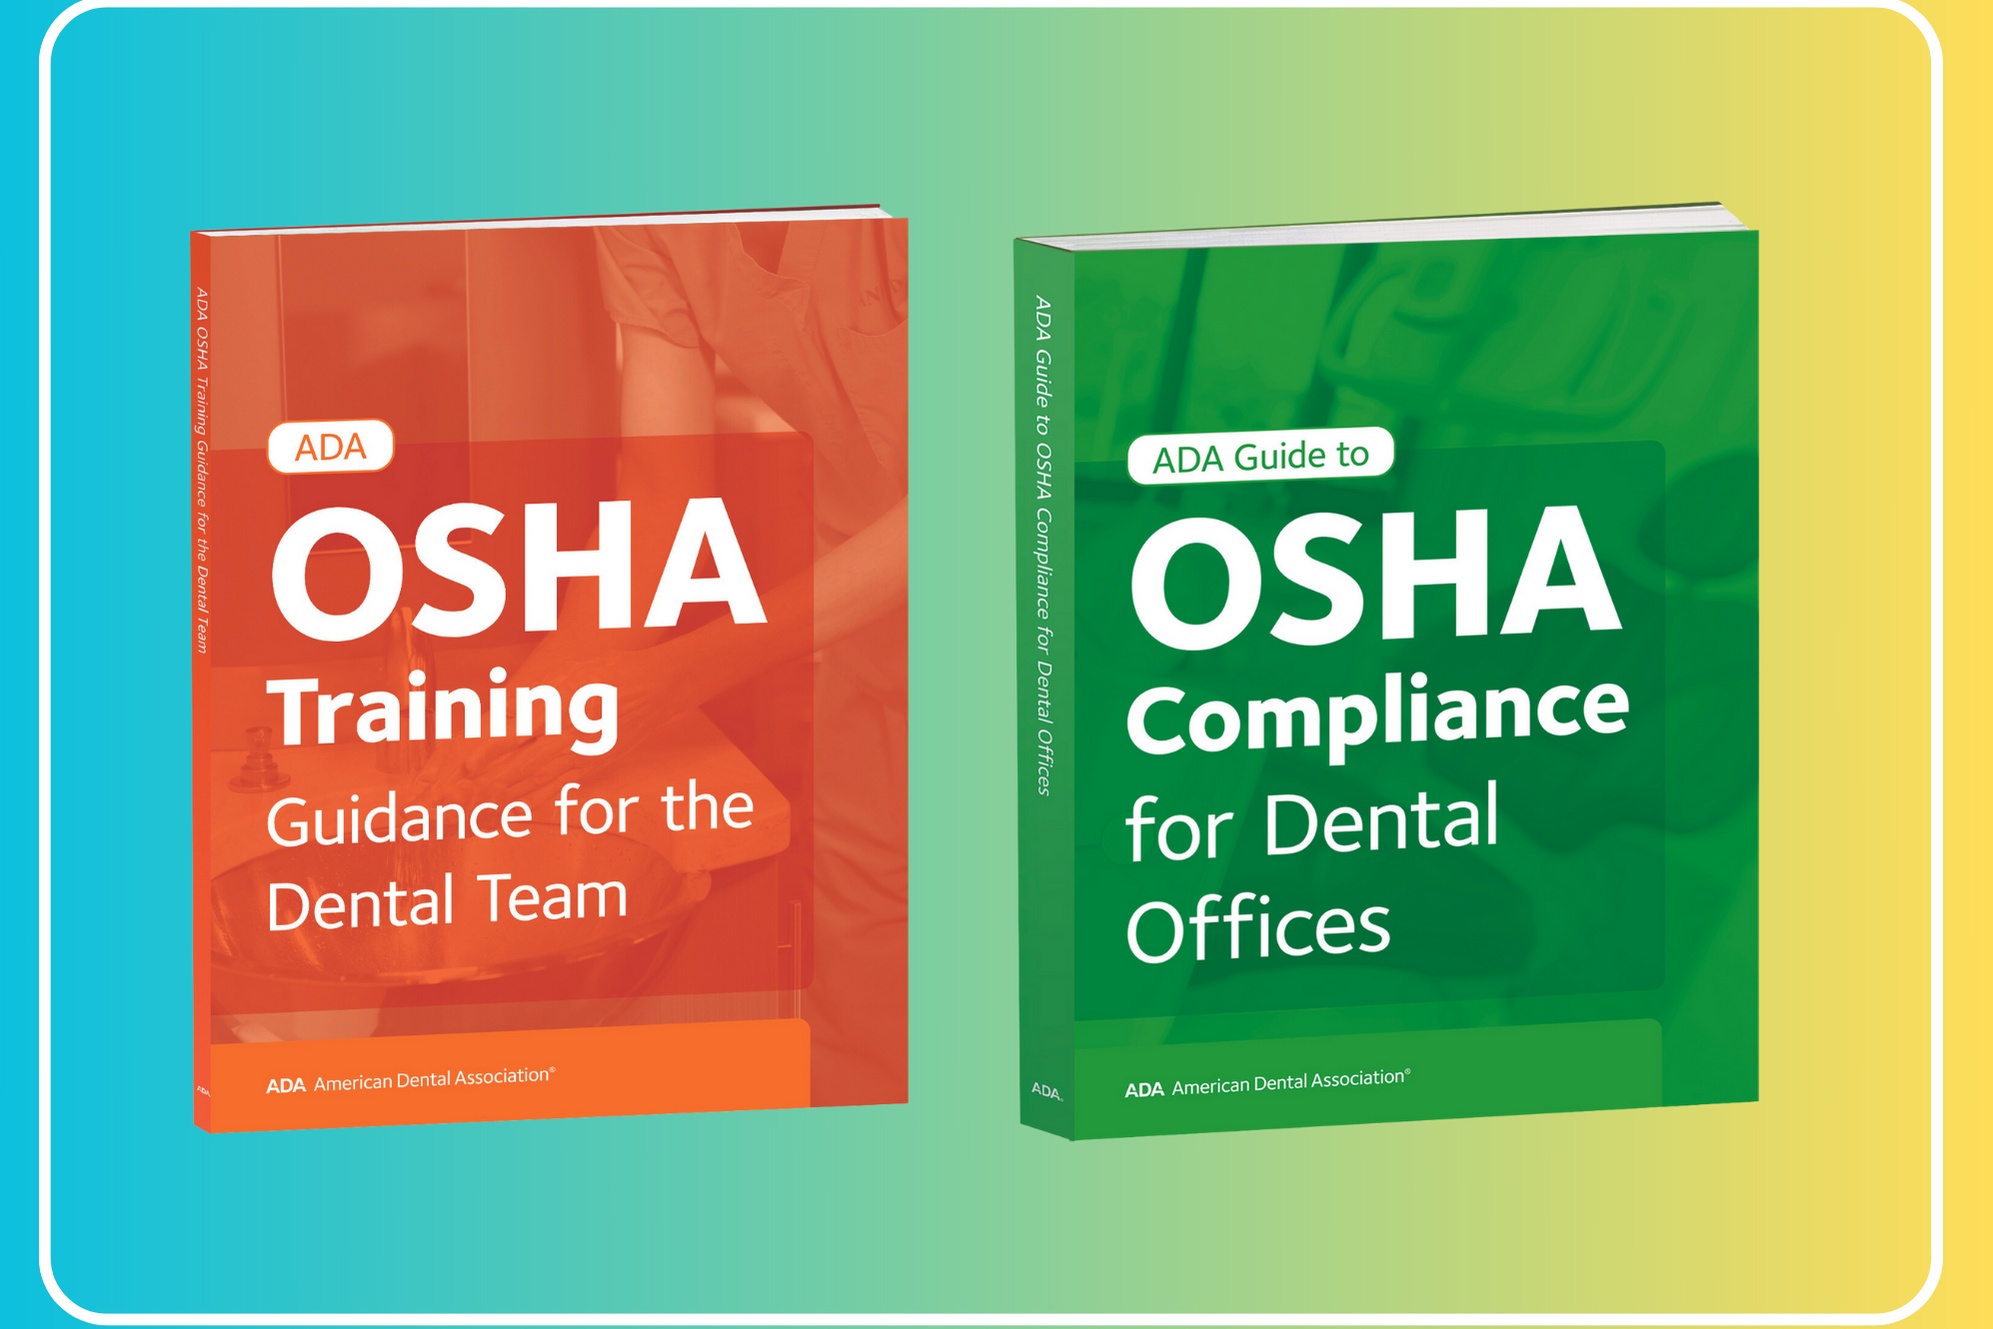 New ADA Publication: OSHA Training and OSHA Compliance Image